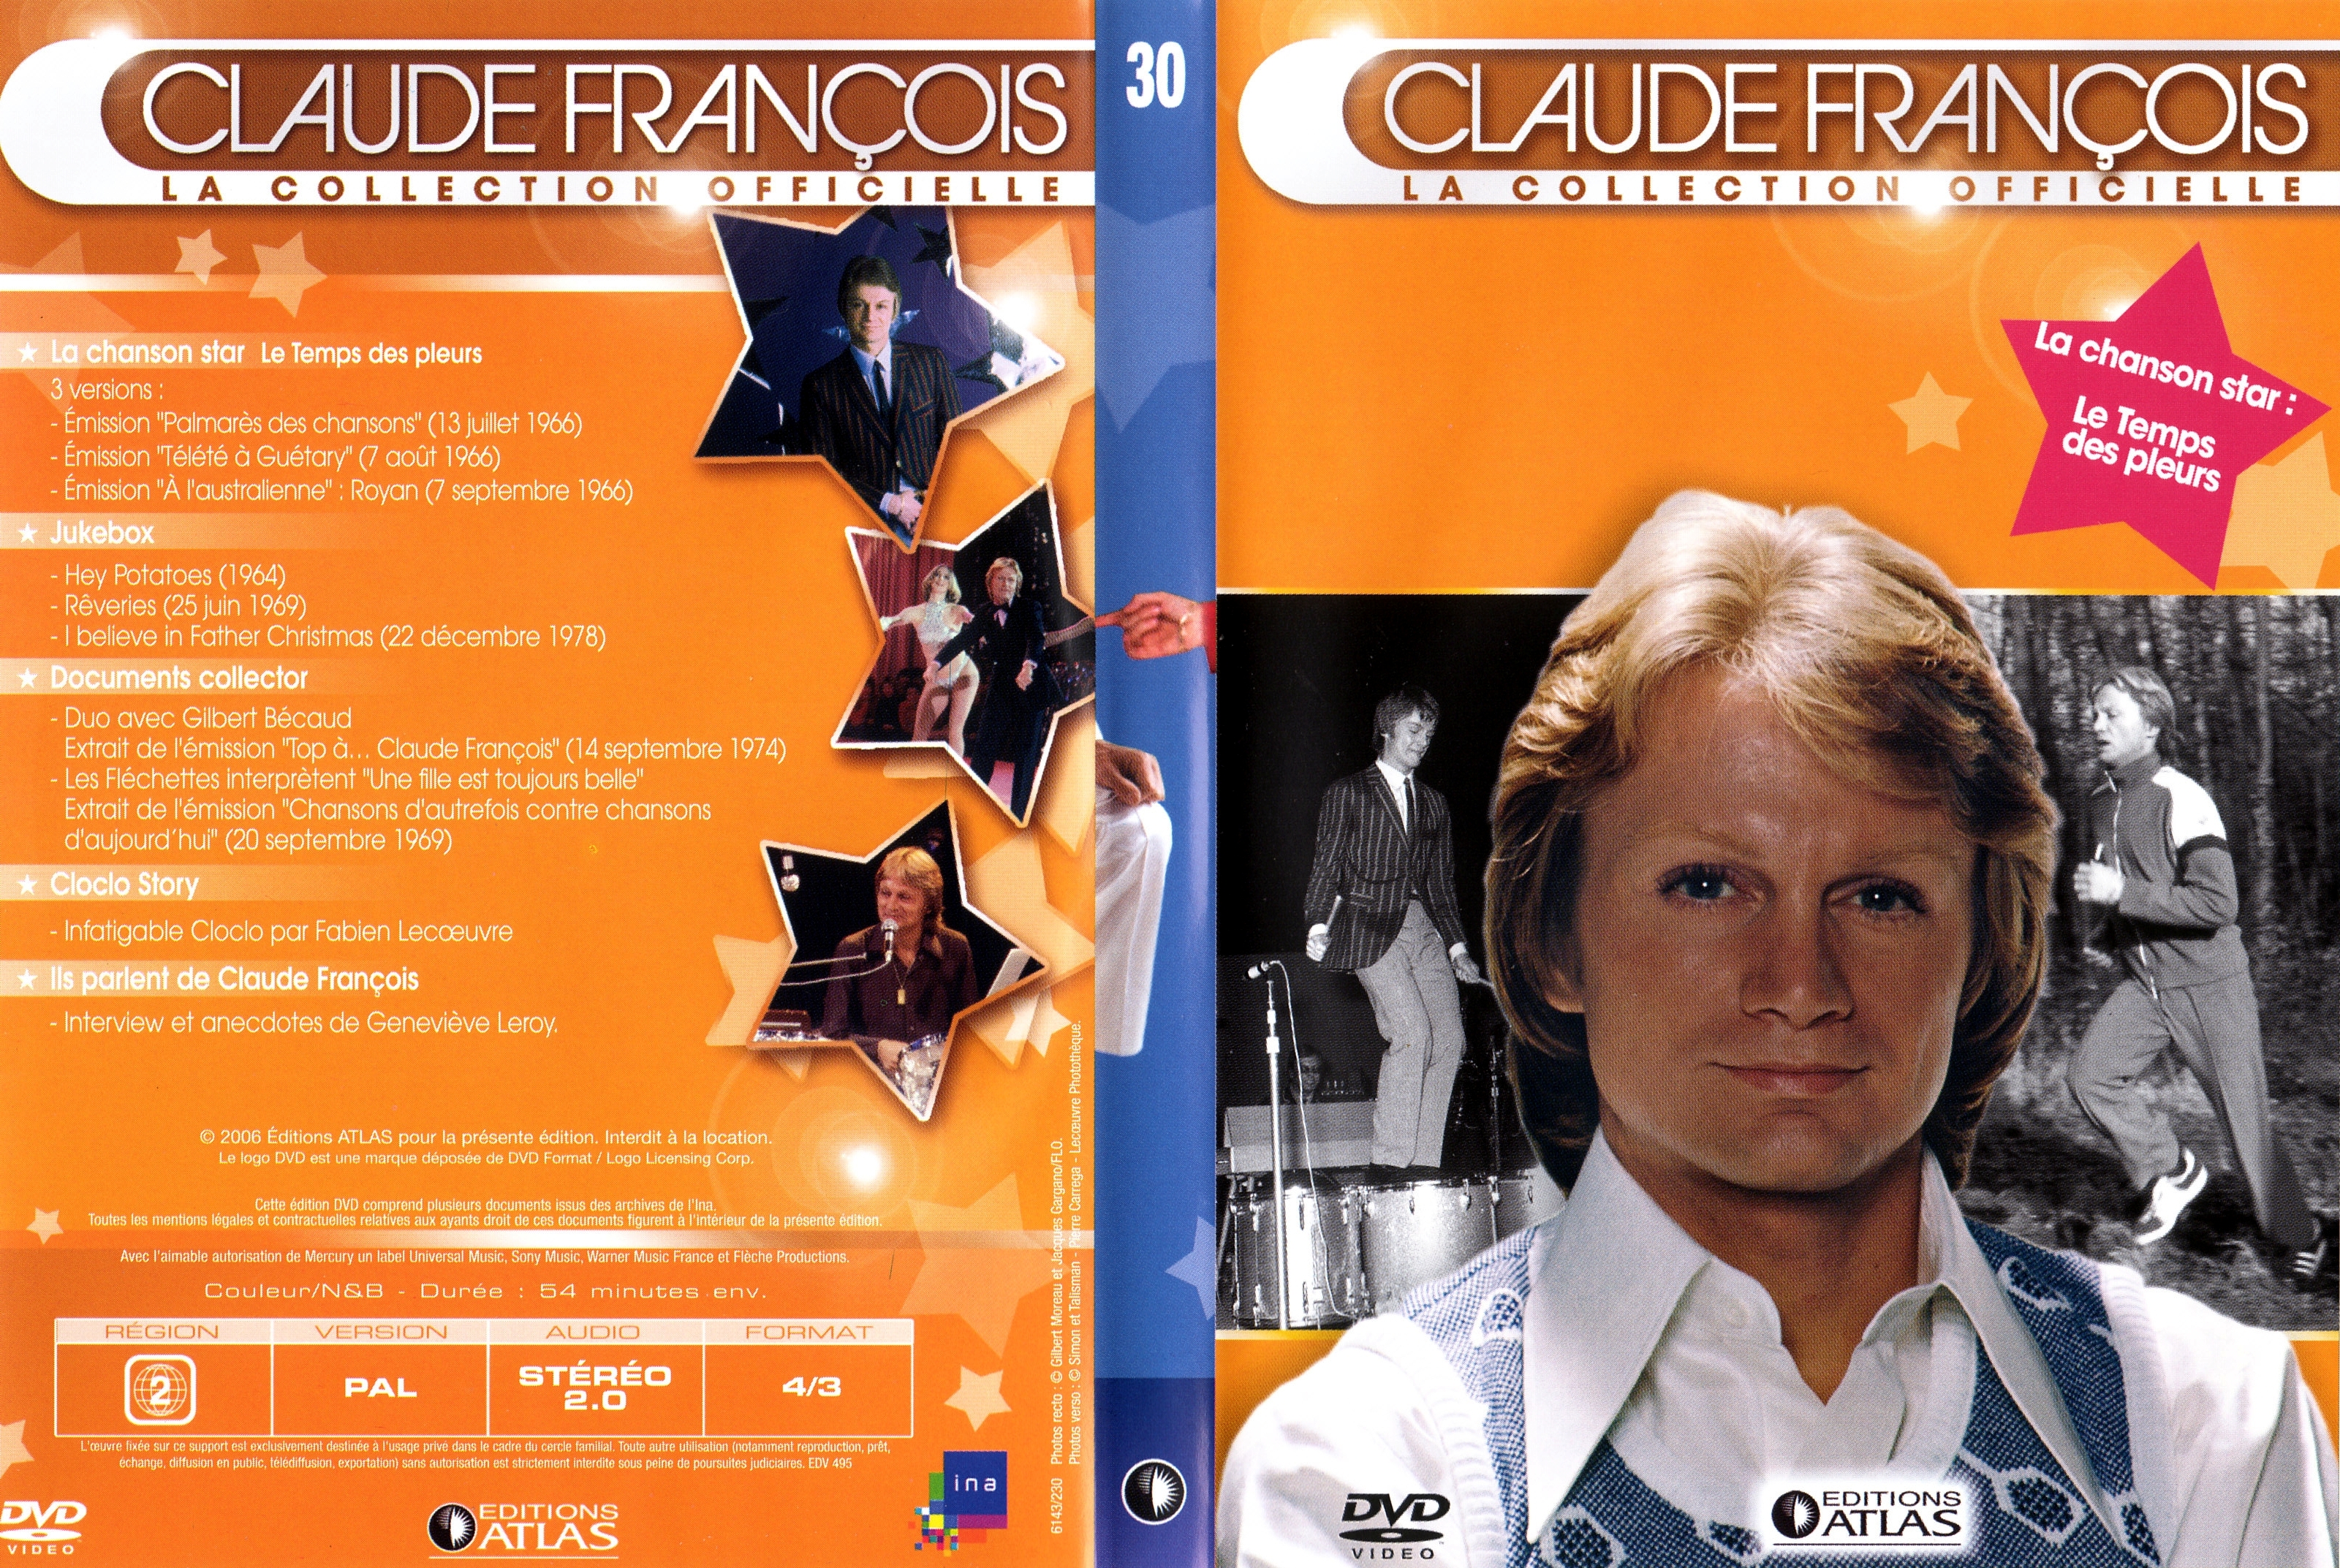 Jaquette DVD Claude Francois la collection officielle vol 30